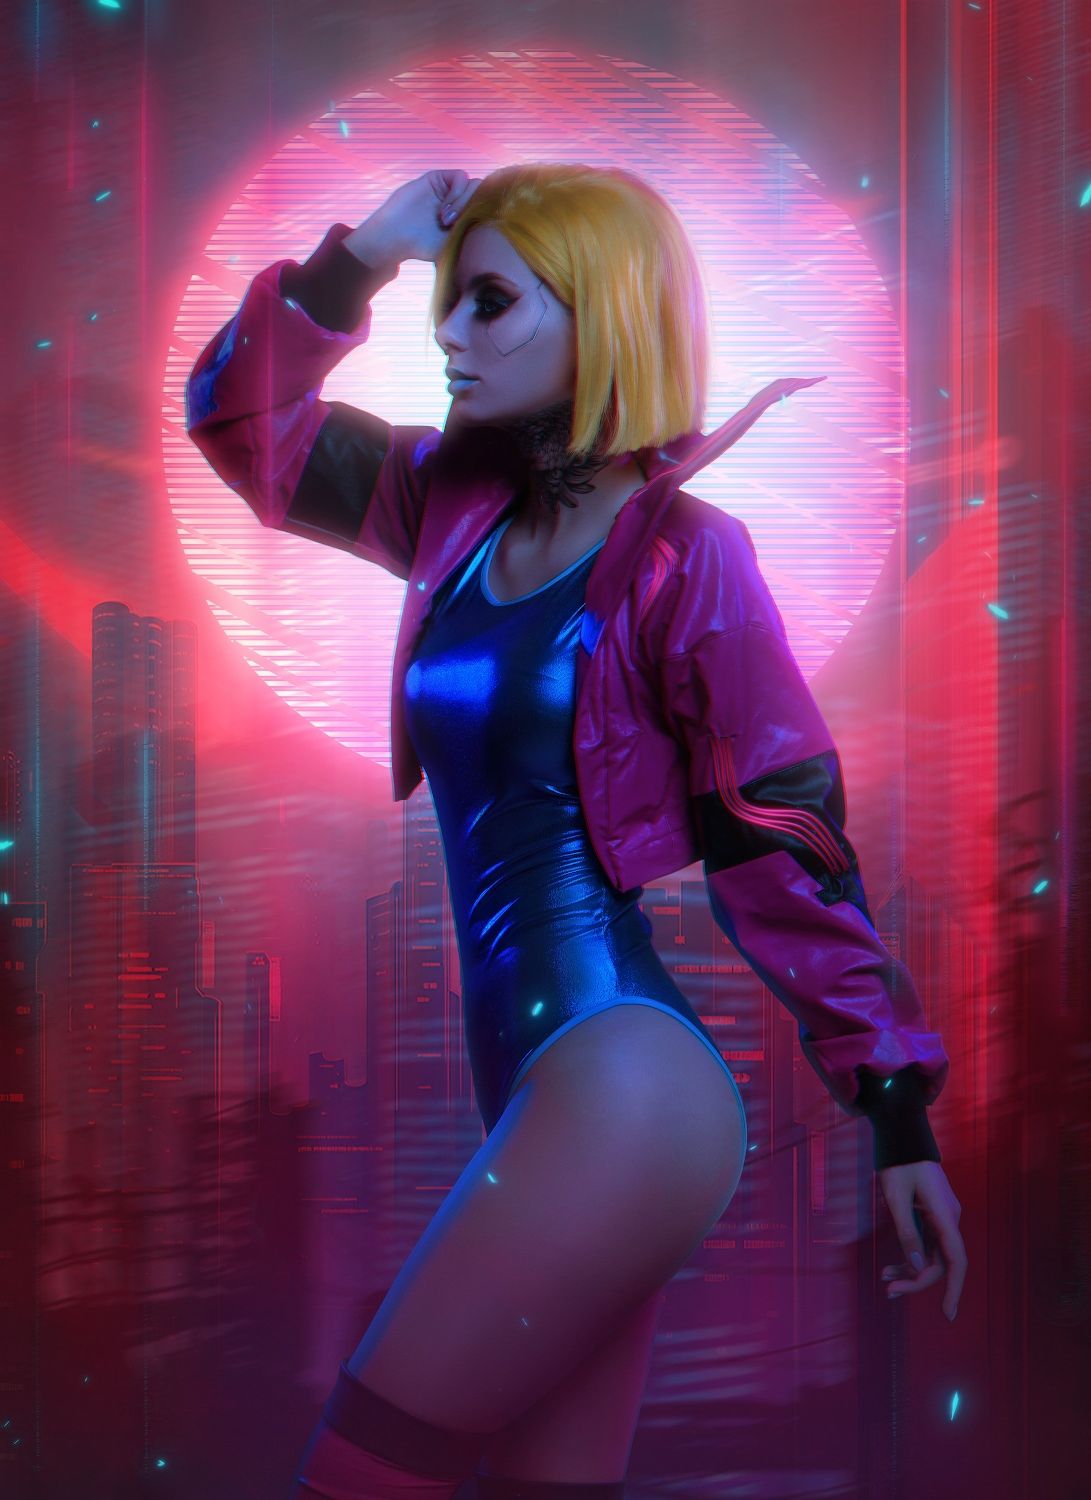 Косплей на персонажа из Cyberpunk 2077. Косплеер: Дарья Кравец. Фотограф: Алена Филиппова. Источник: vk.com/alensphoto.